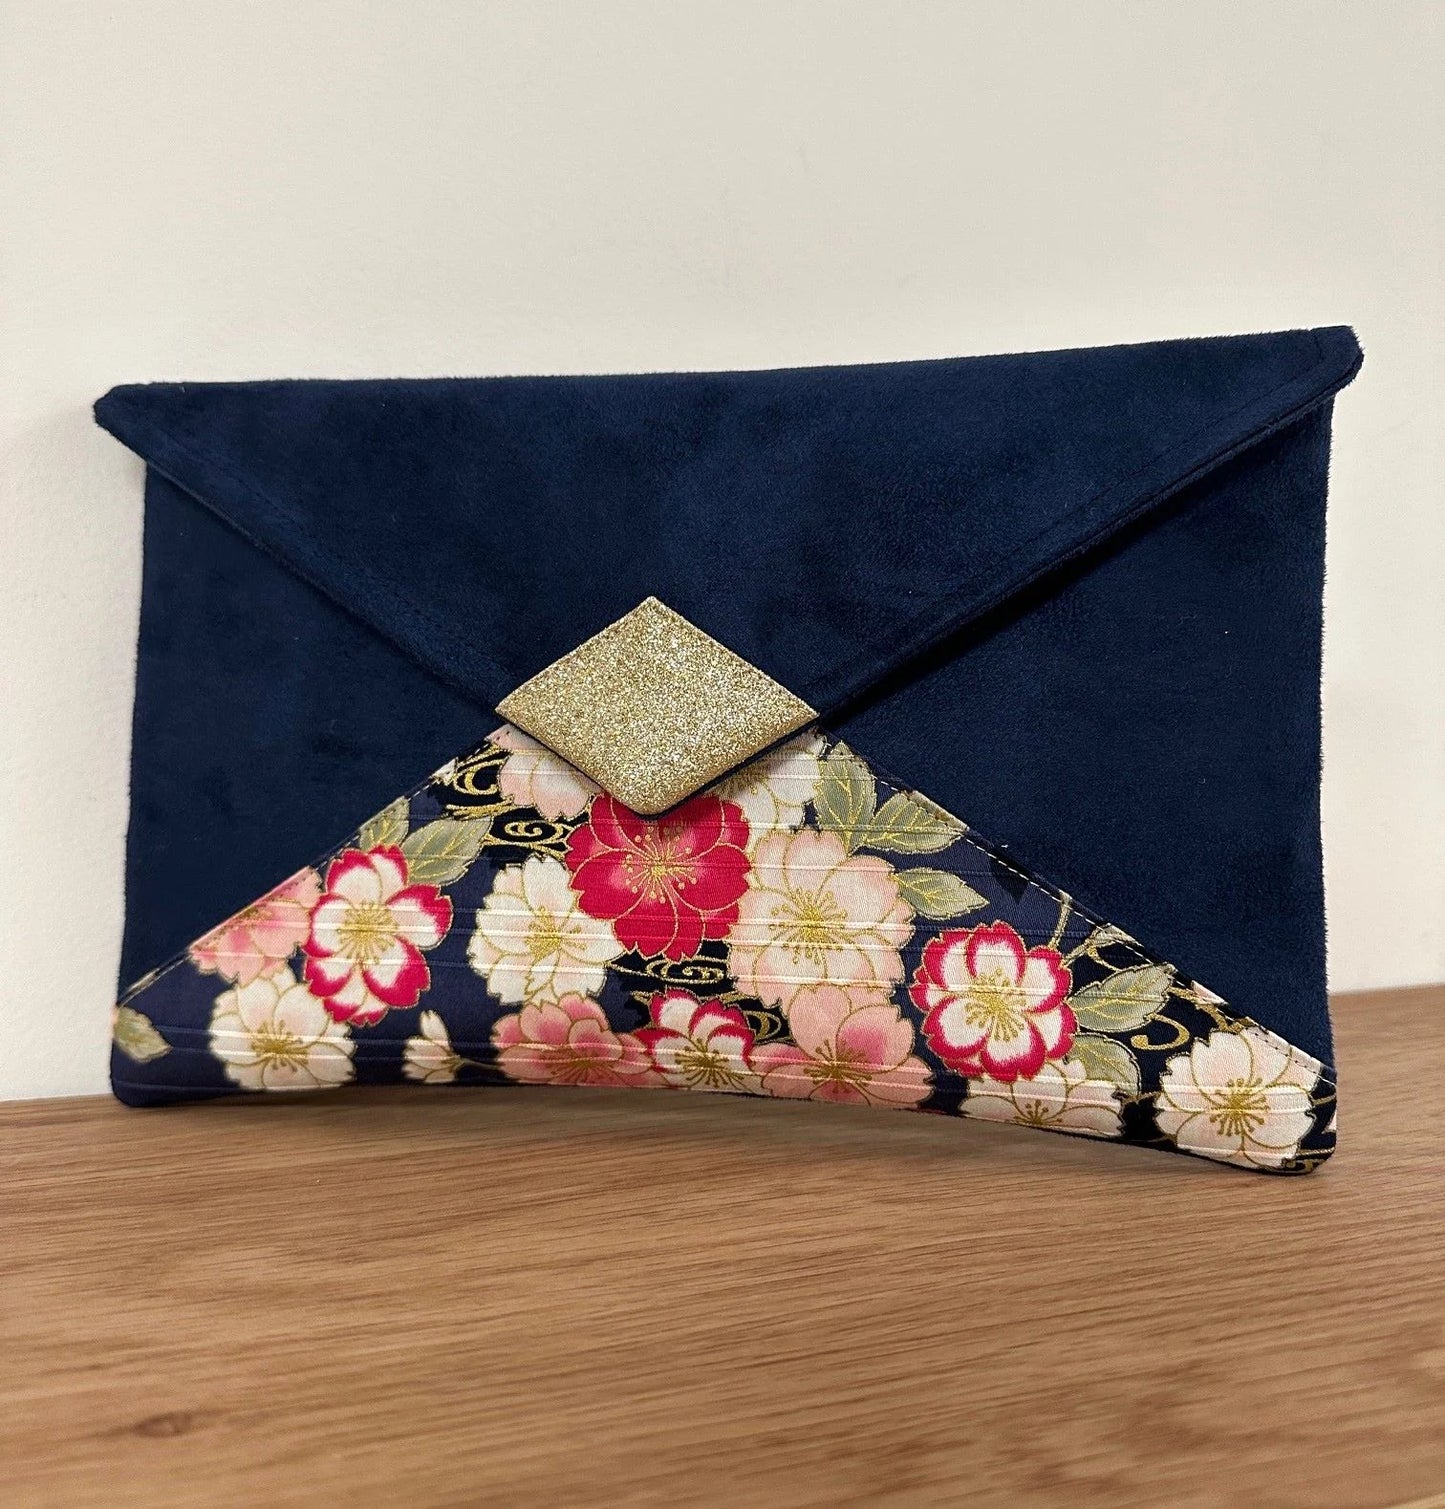 Le sac pochette Isa bleu marine avec tissu japonais fleuri et paillettes dorées sans chainette dorée.